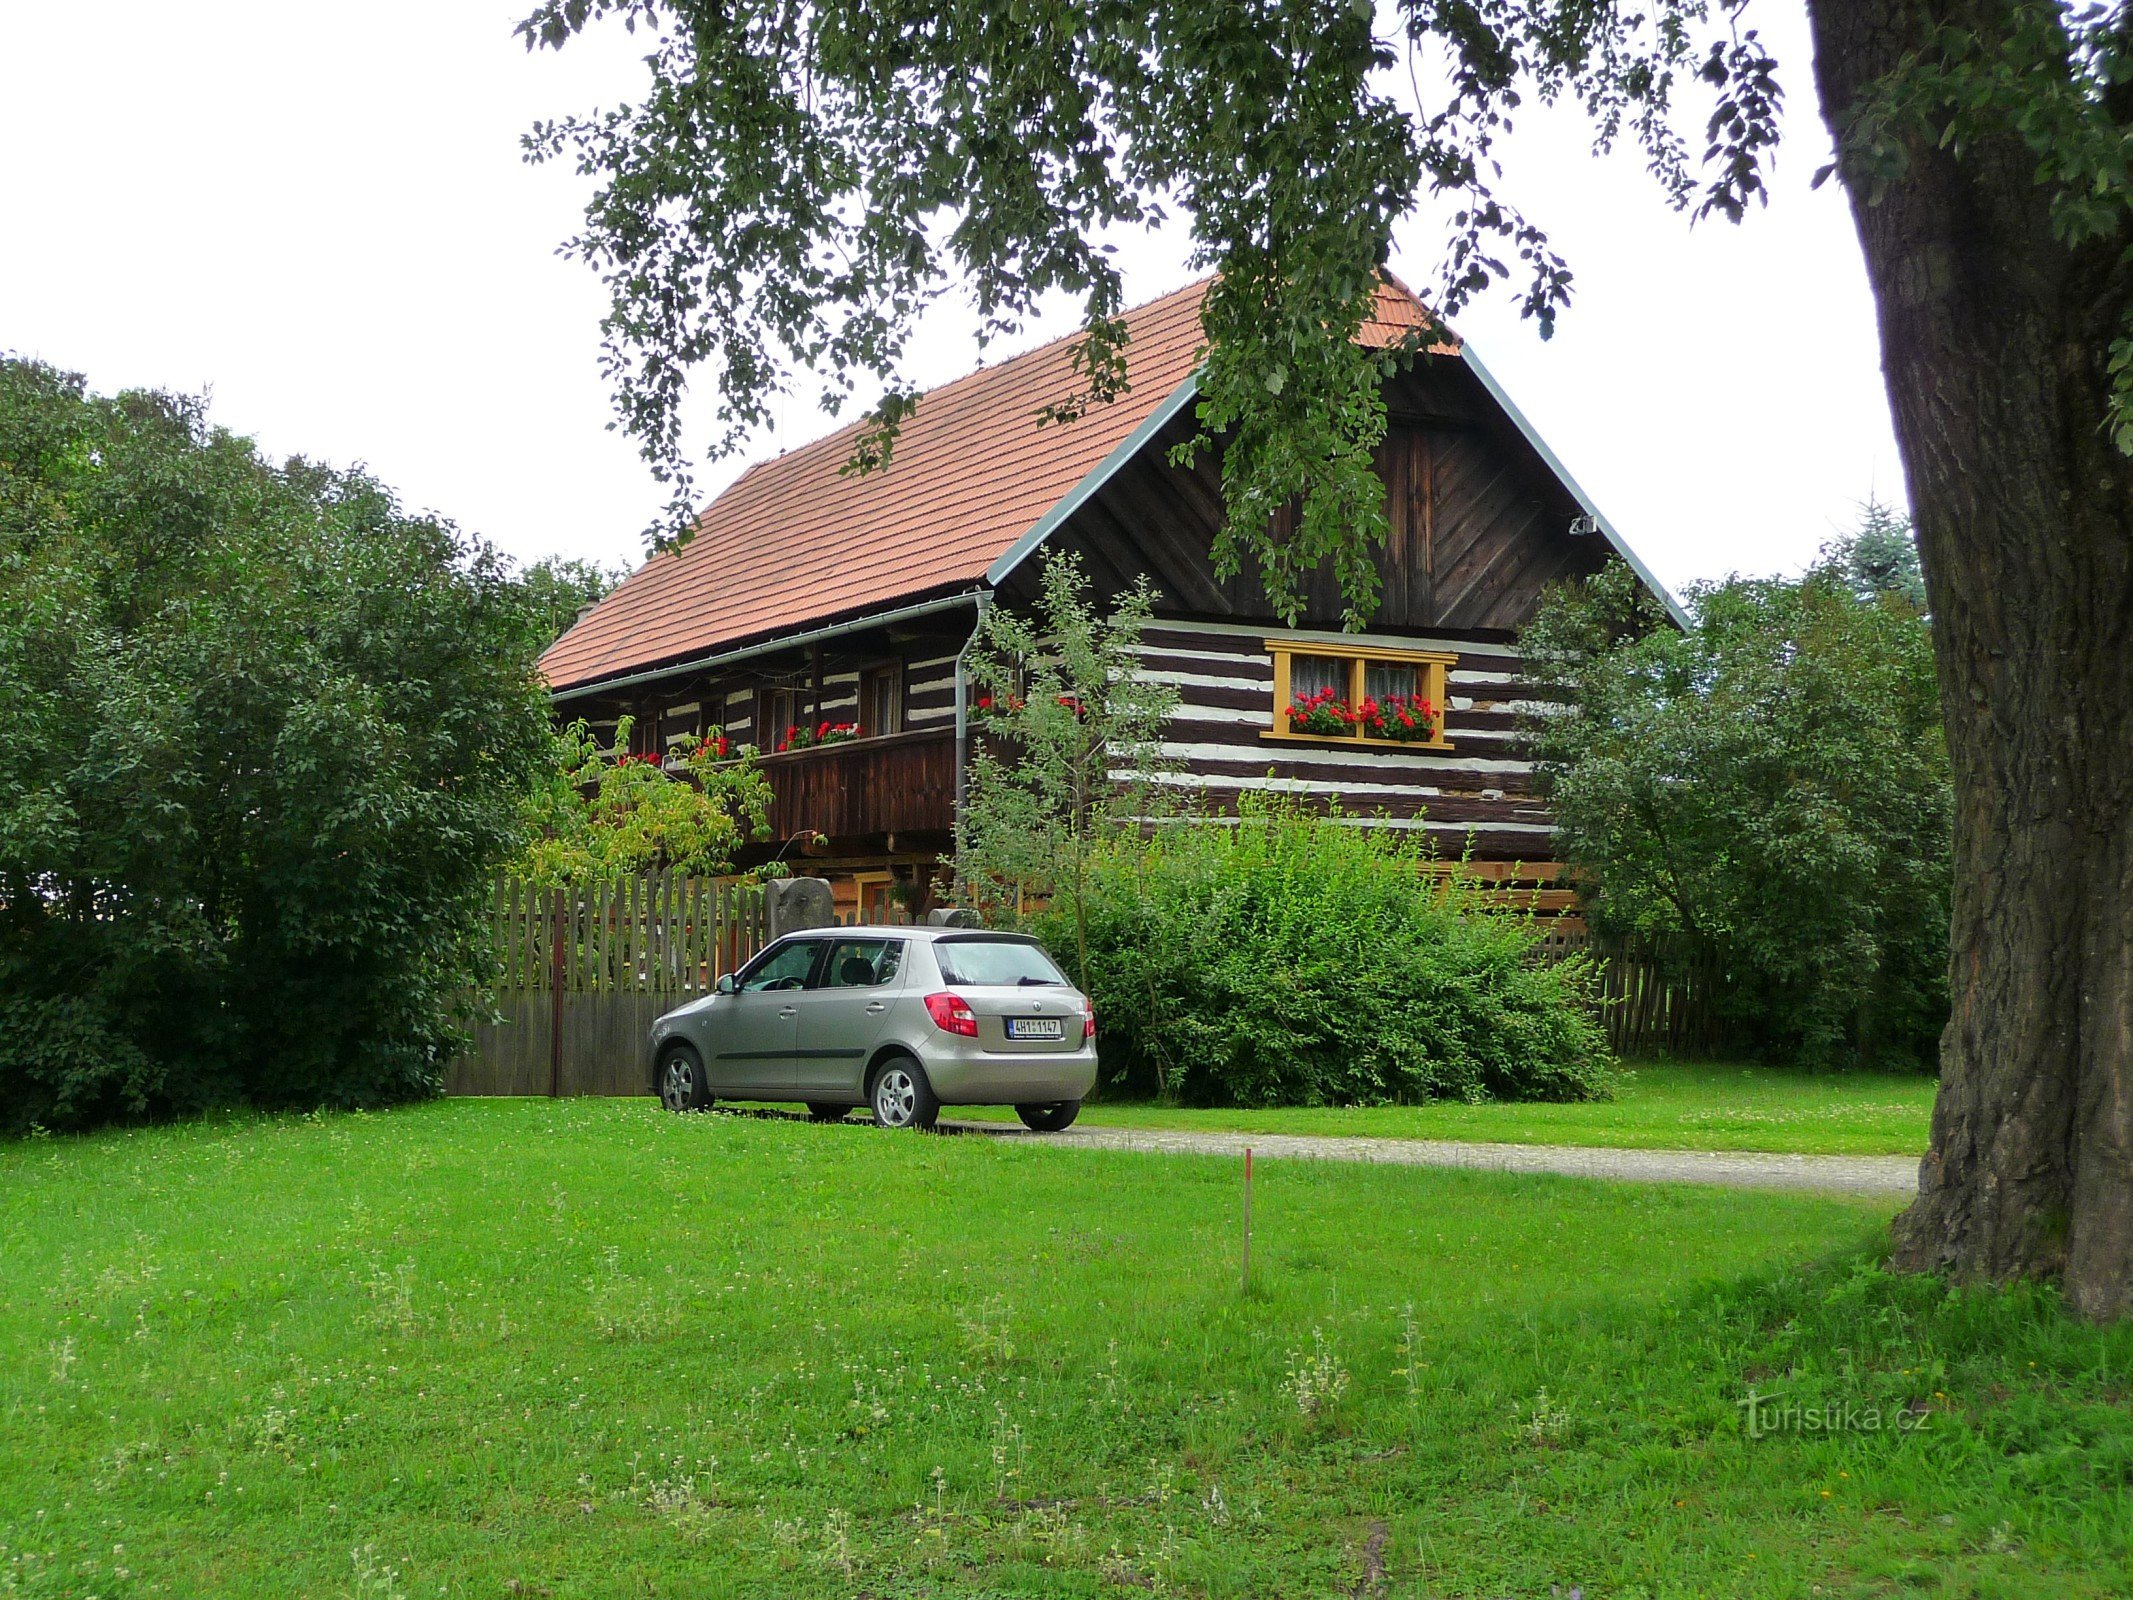 Libošovice, Neprivěc - Vesec u Sobotka - Thung lũng Plakánek - Lâu đài Kost